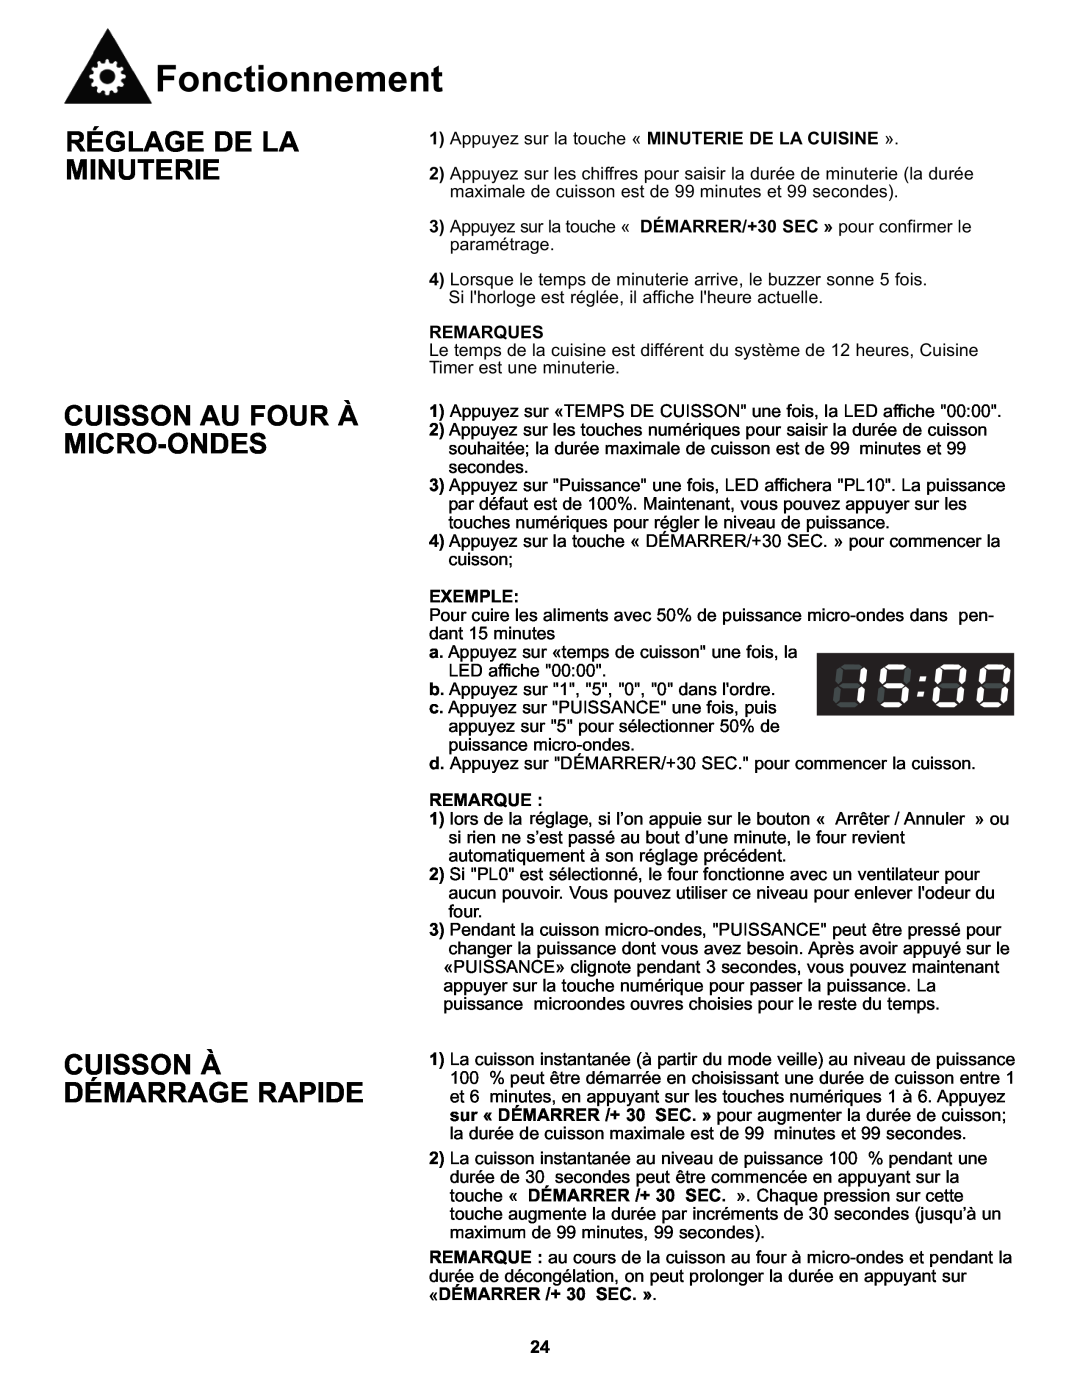 Danby DMW111KWDB manual Réglage De La Minuterie, Cuisson Au Four À Micro-Ondes, Cuisson À Démarrage Rapide, Fonctionnement 